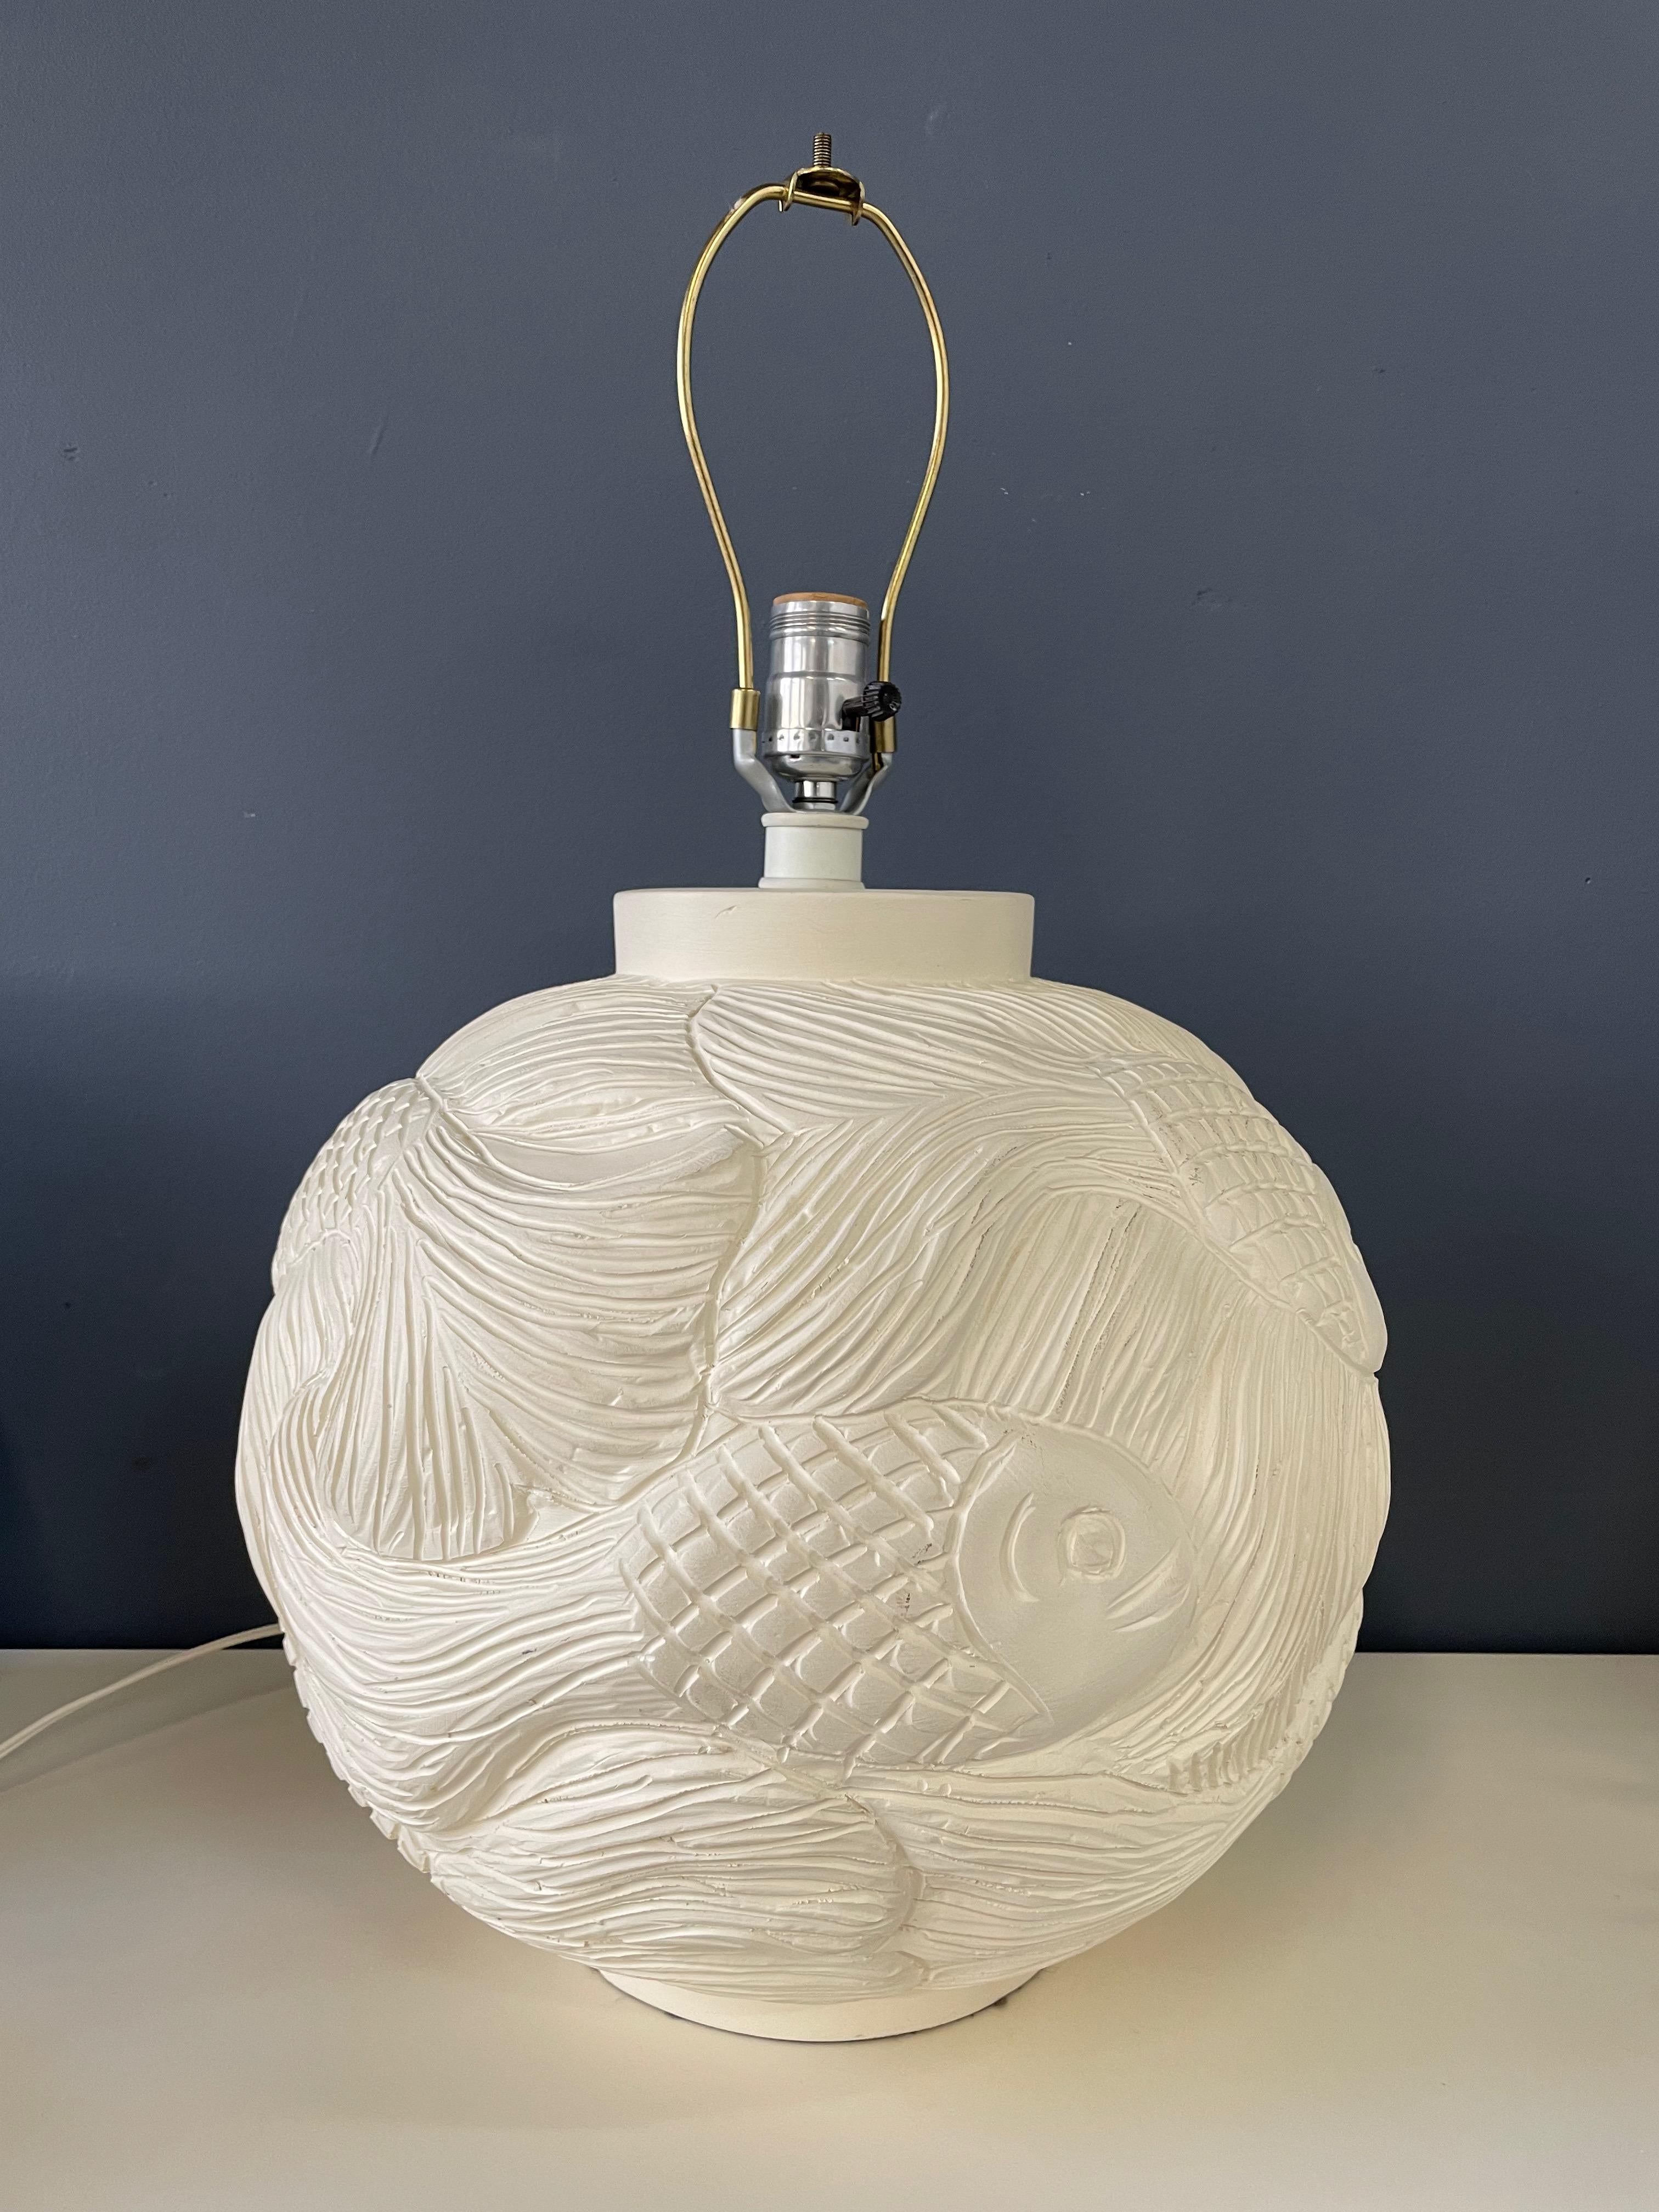 Une belle lampe artisanale avec un motif de poissons nageant dans une méthode profondément incisée.